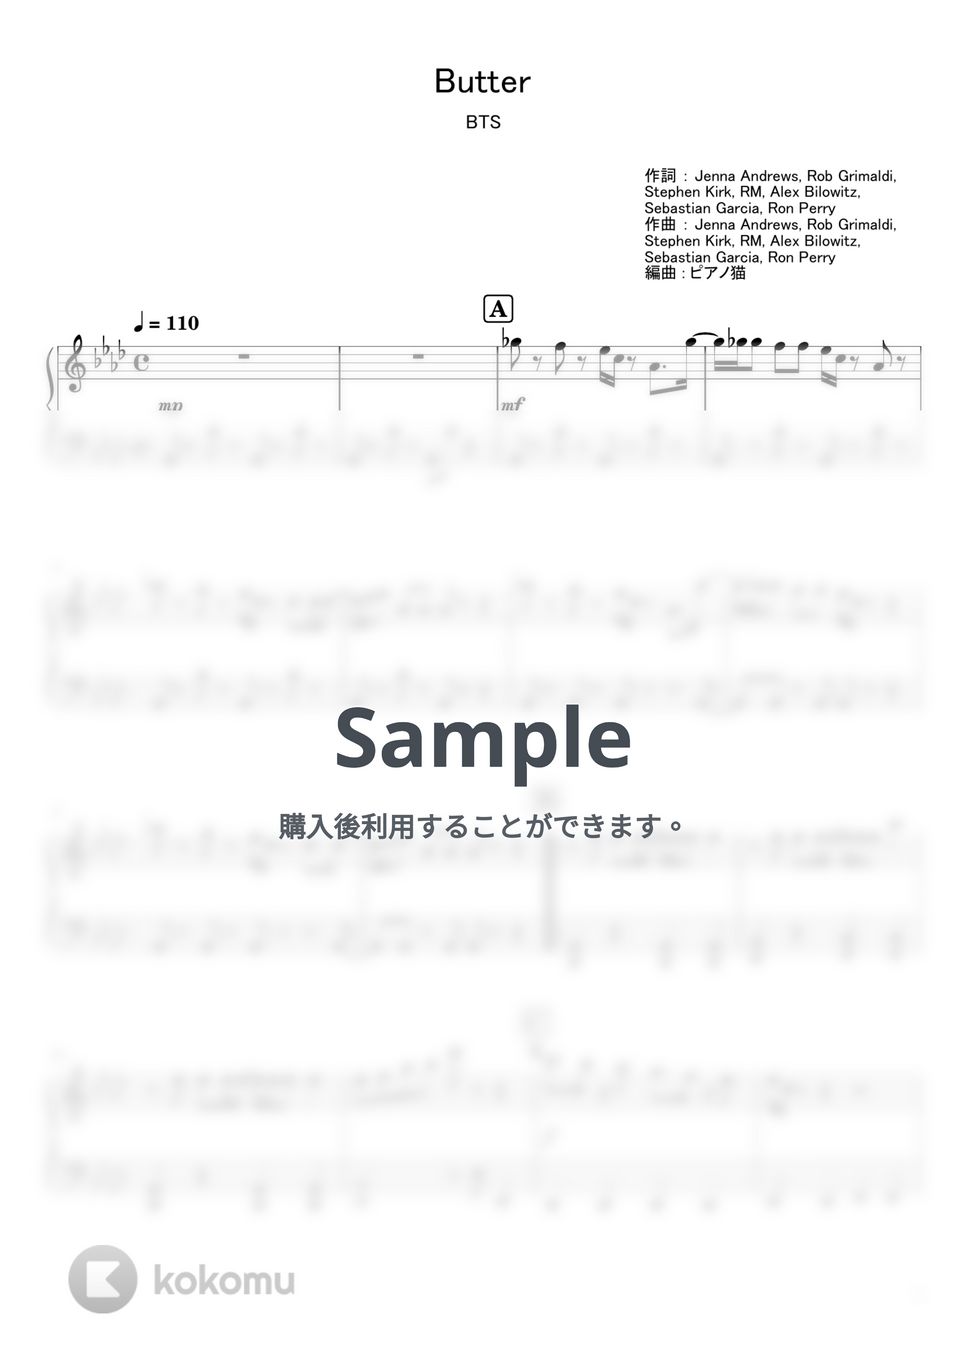 防弾少年団(BTS) - Butter (ピアノ / 韓国) by ピアノ猫